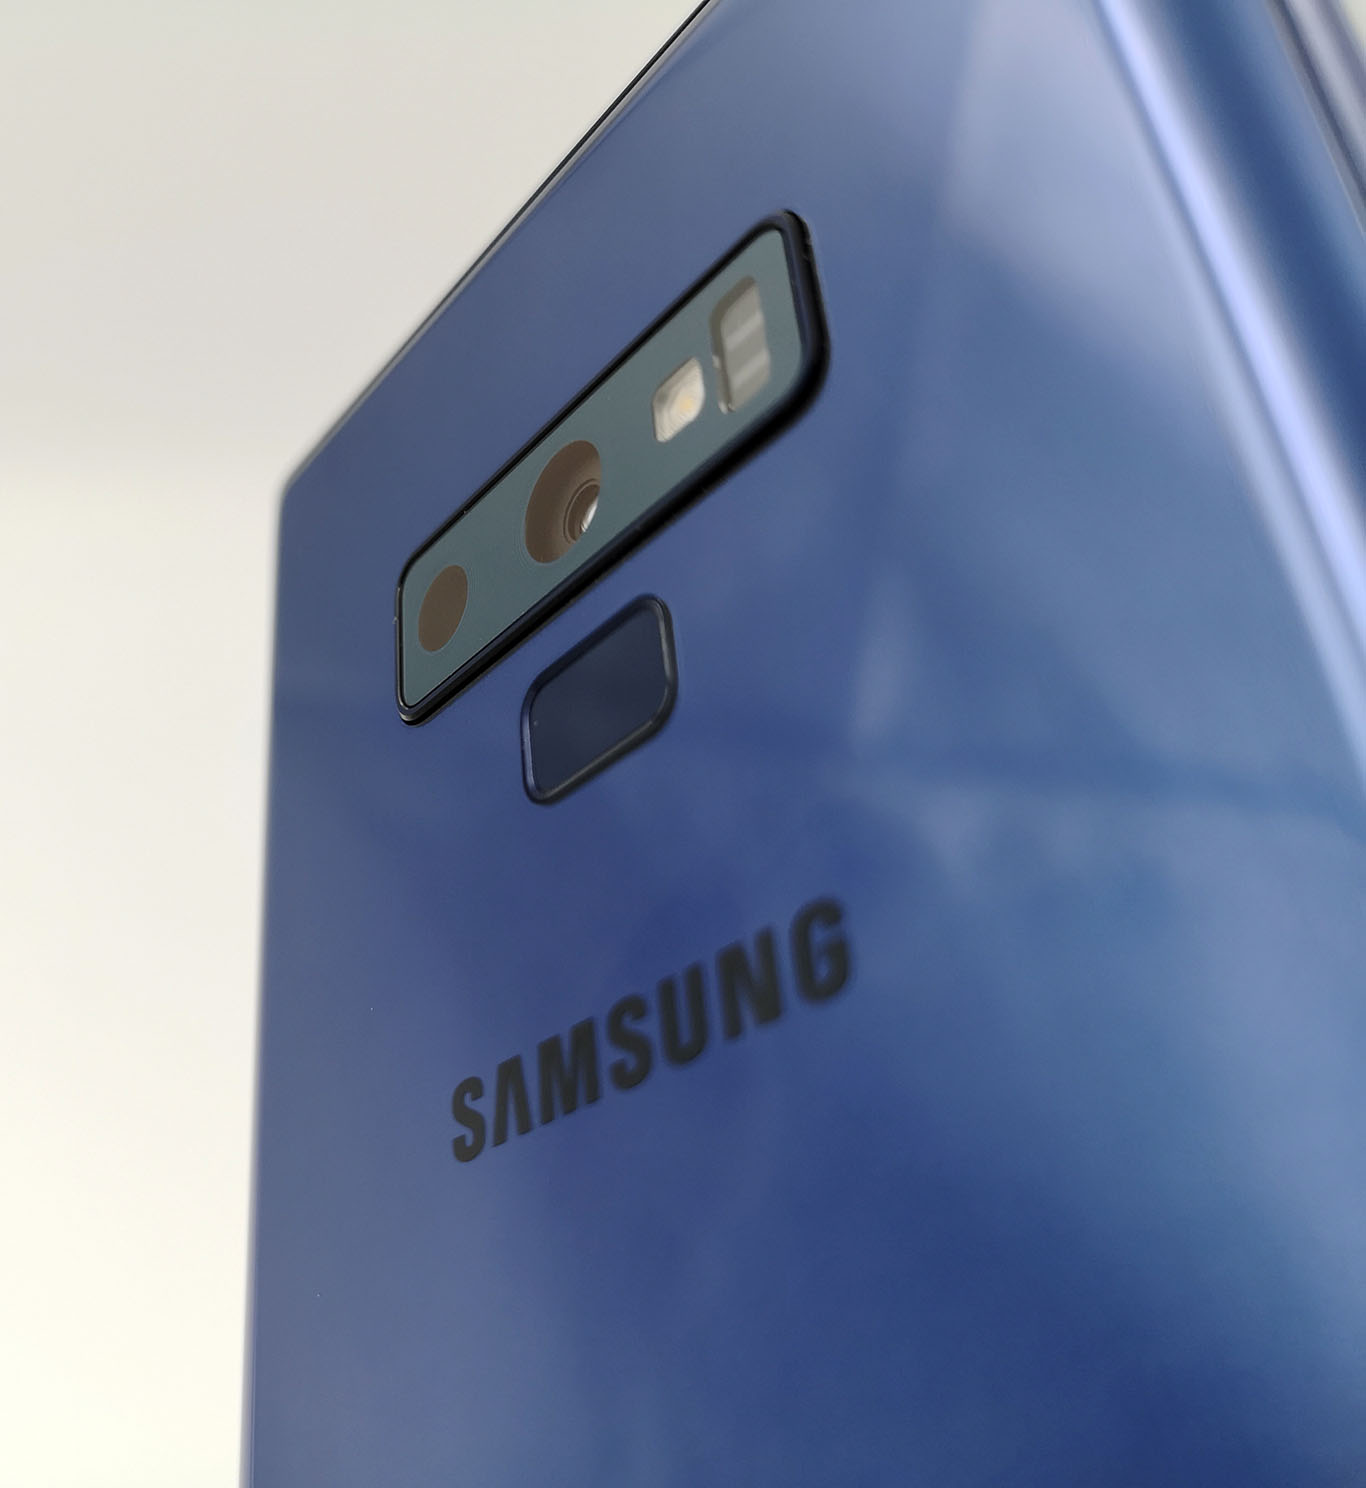 Samsung Galaxy Note 9 operadoras